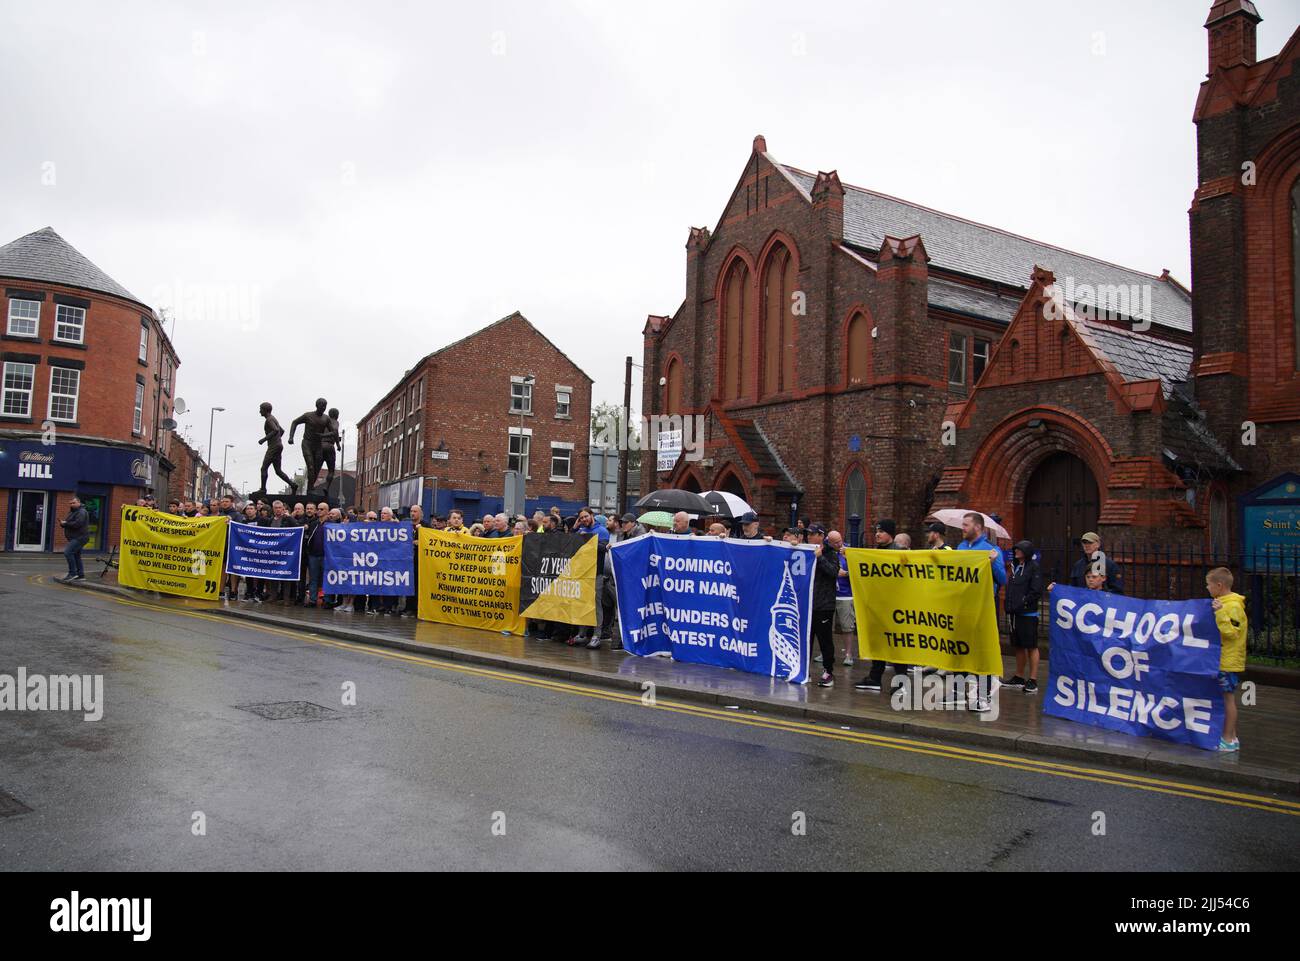 Los aficionados del Everton protestan en las afueras de Goodison Park. Los fans de Everton reanudaron sus protestas fuera de Goodison Park el sábado en un intento de invitar a más escrutinio sobre la “mala gestión” del club bajo el propietario Farhad Moshiri. Fecha de la foto: Sábado 23 de julio de 2022. Foto de stock